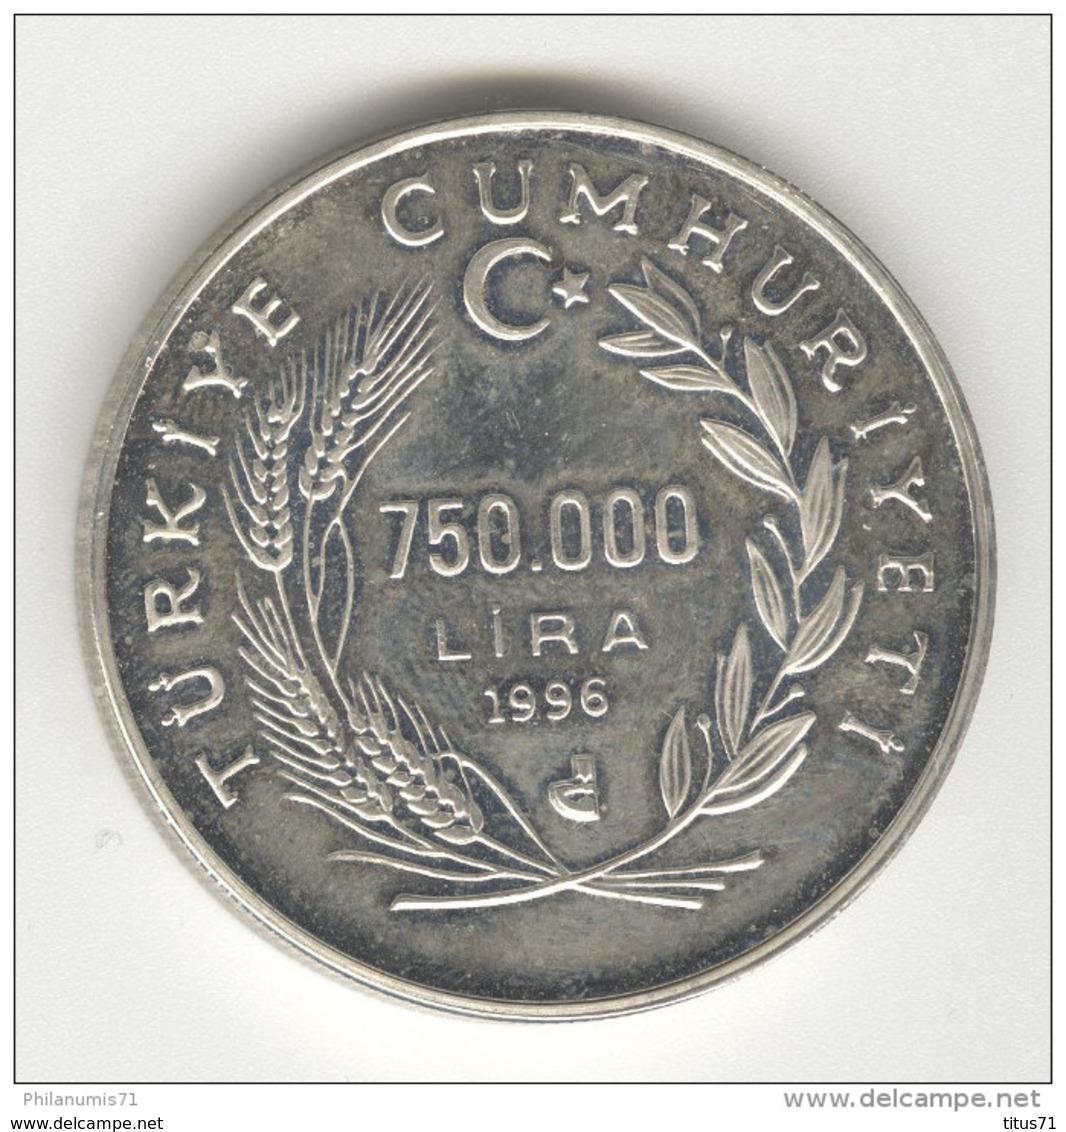 750 000 Bin Lira 1998 - Turquie / Turkey - Argent / Silver - Turquie